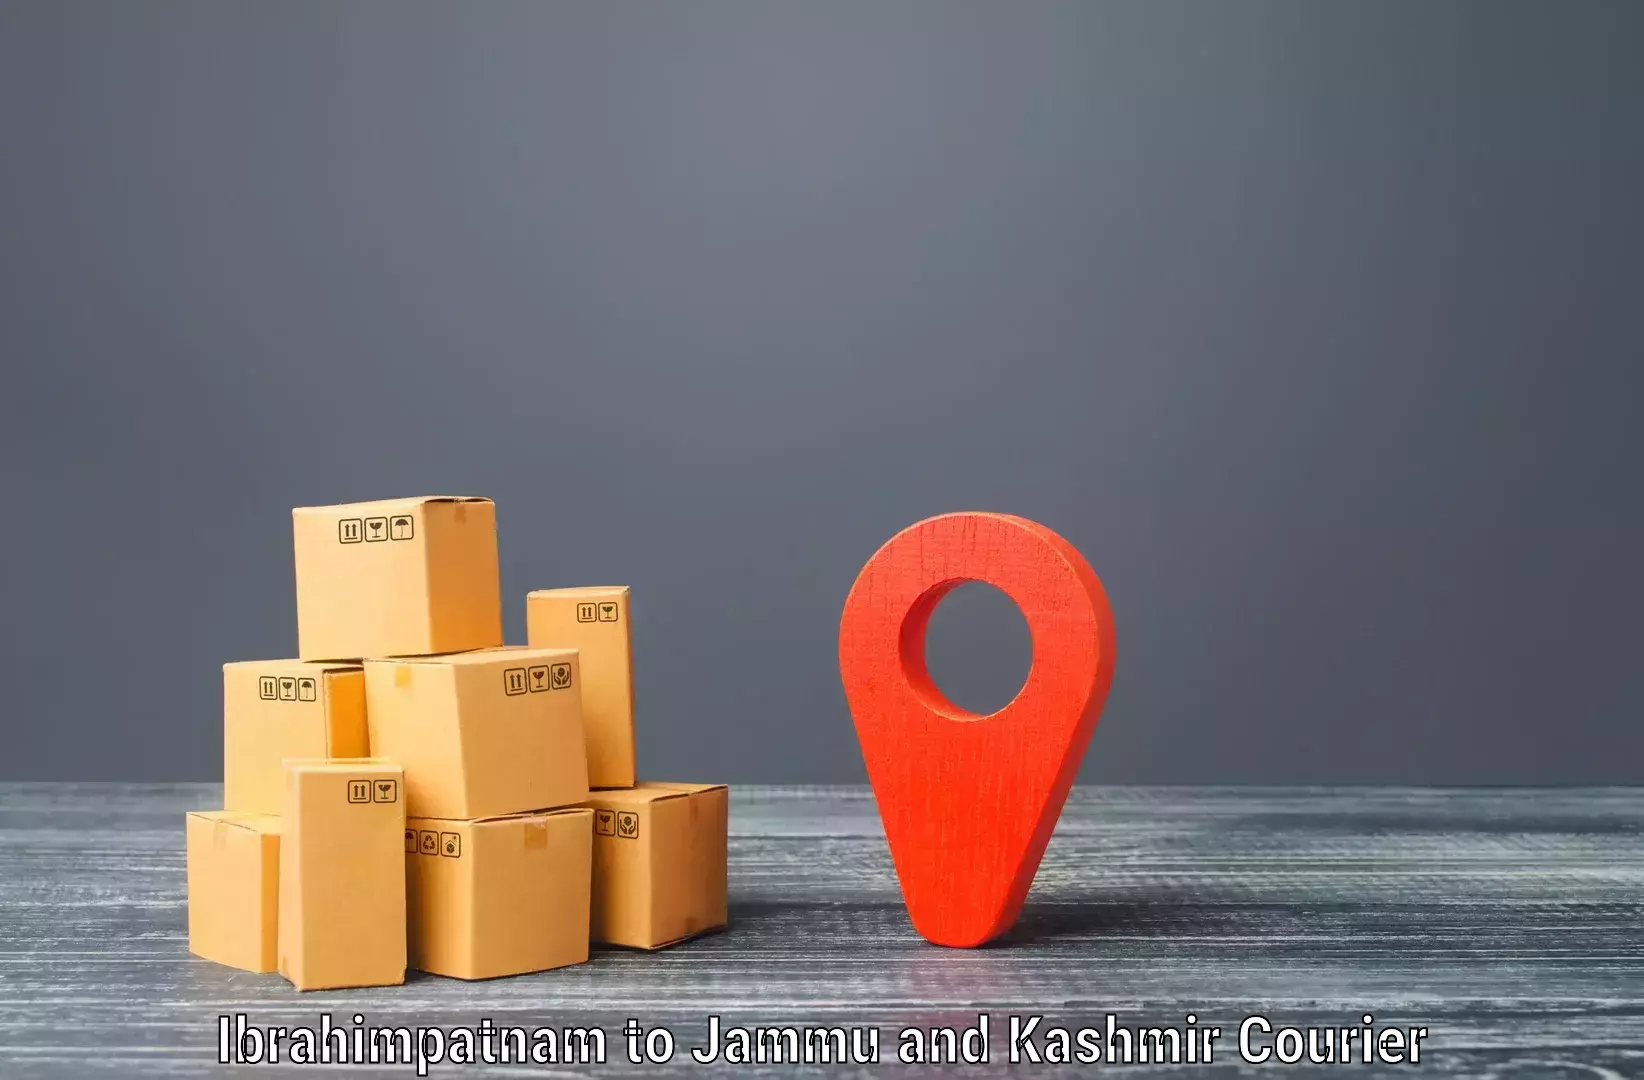 Reliable parcel services Ibrahimpatnam to Rajouri